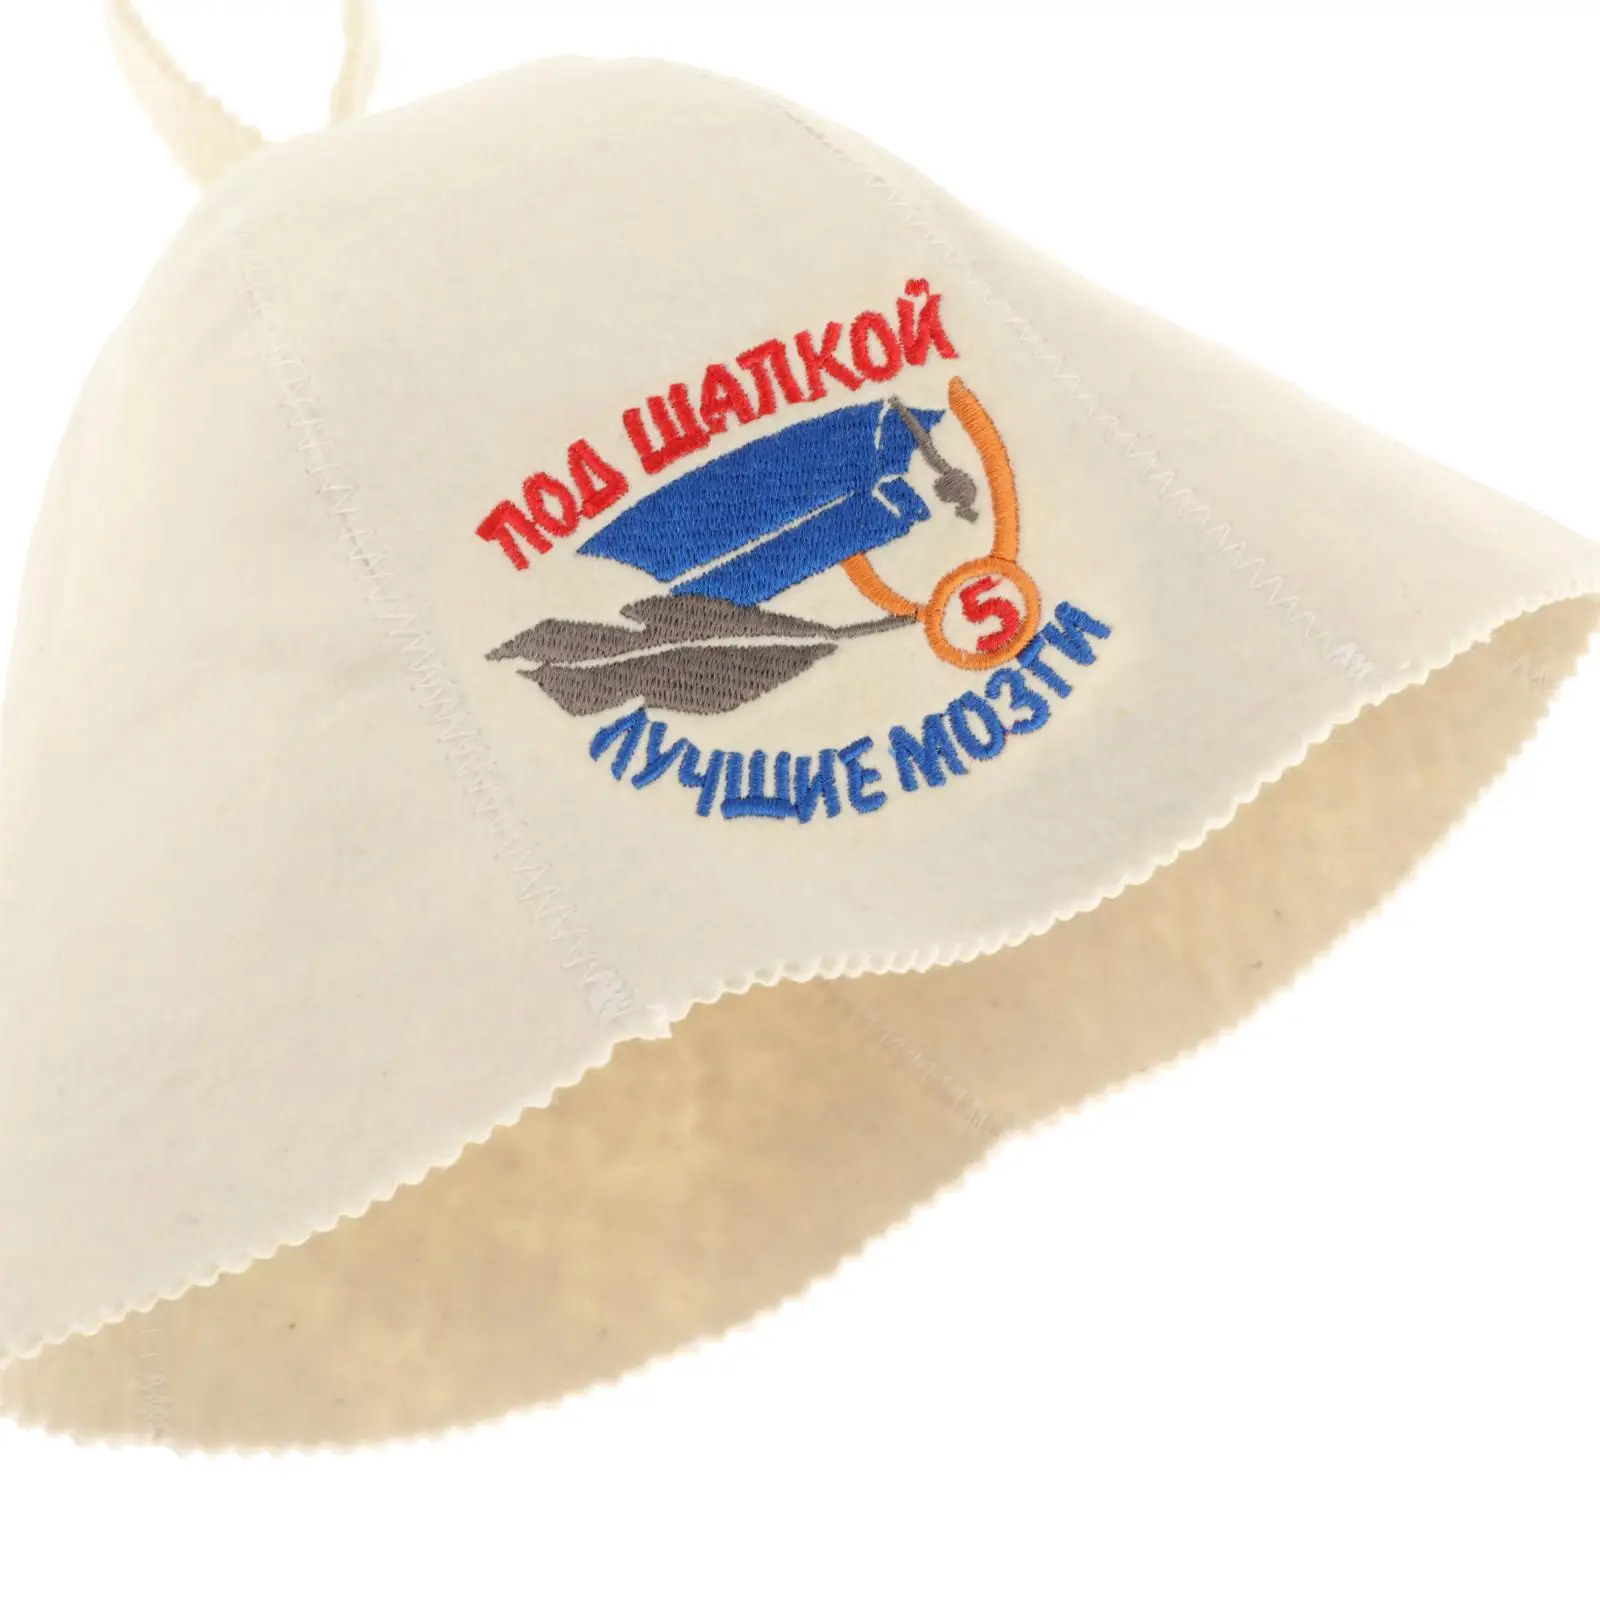 Sauna Hat Russian Banya Ukrainian Bathhouse Vaporarium Hat for Bath Shower